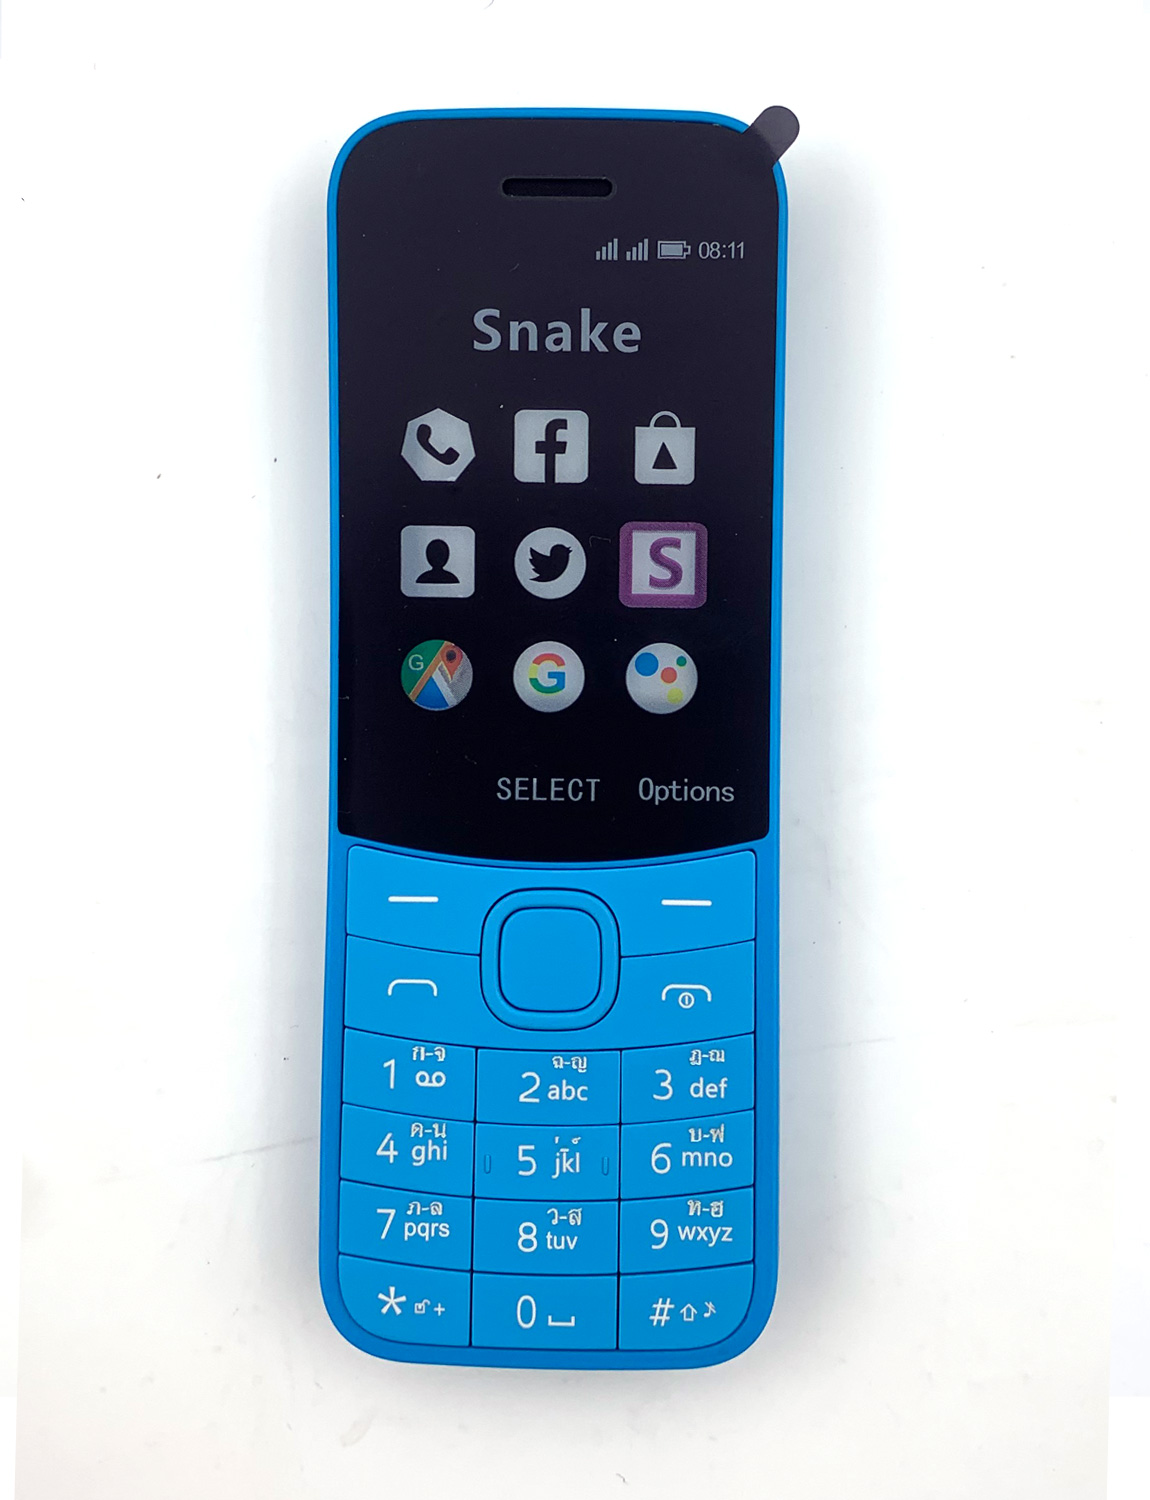 Odscn โทรศัพท์มือถือ รุ่น 8110 ใส่ได้2ซิม (มีคีย์บอรด์ไทย) จอ 1.8 รองรับ 2G/3G/4G ปุ่มกดใหญ่สะใจ กดง่าย เห็นชัด โทรศัพท์ใช้ง่าย ใช้ดี ราคาถูก